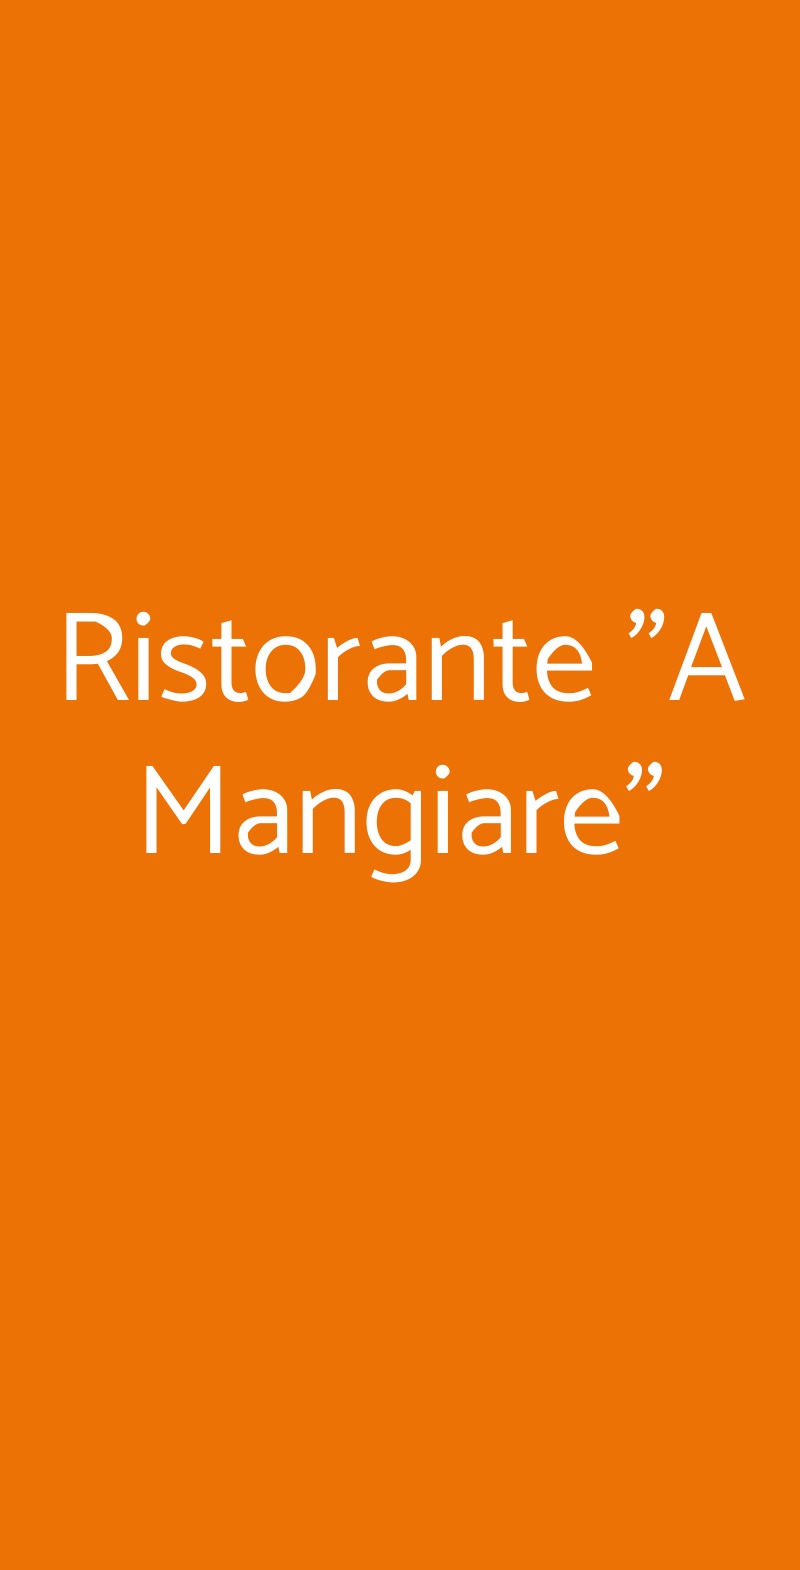 Ristorante "A Mangiare" Reggio Emilia menù 1 pagina